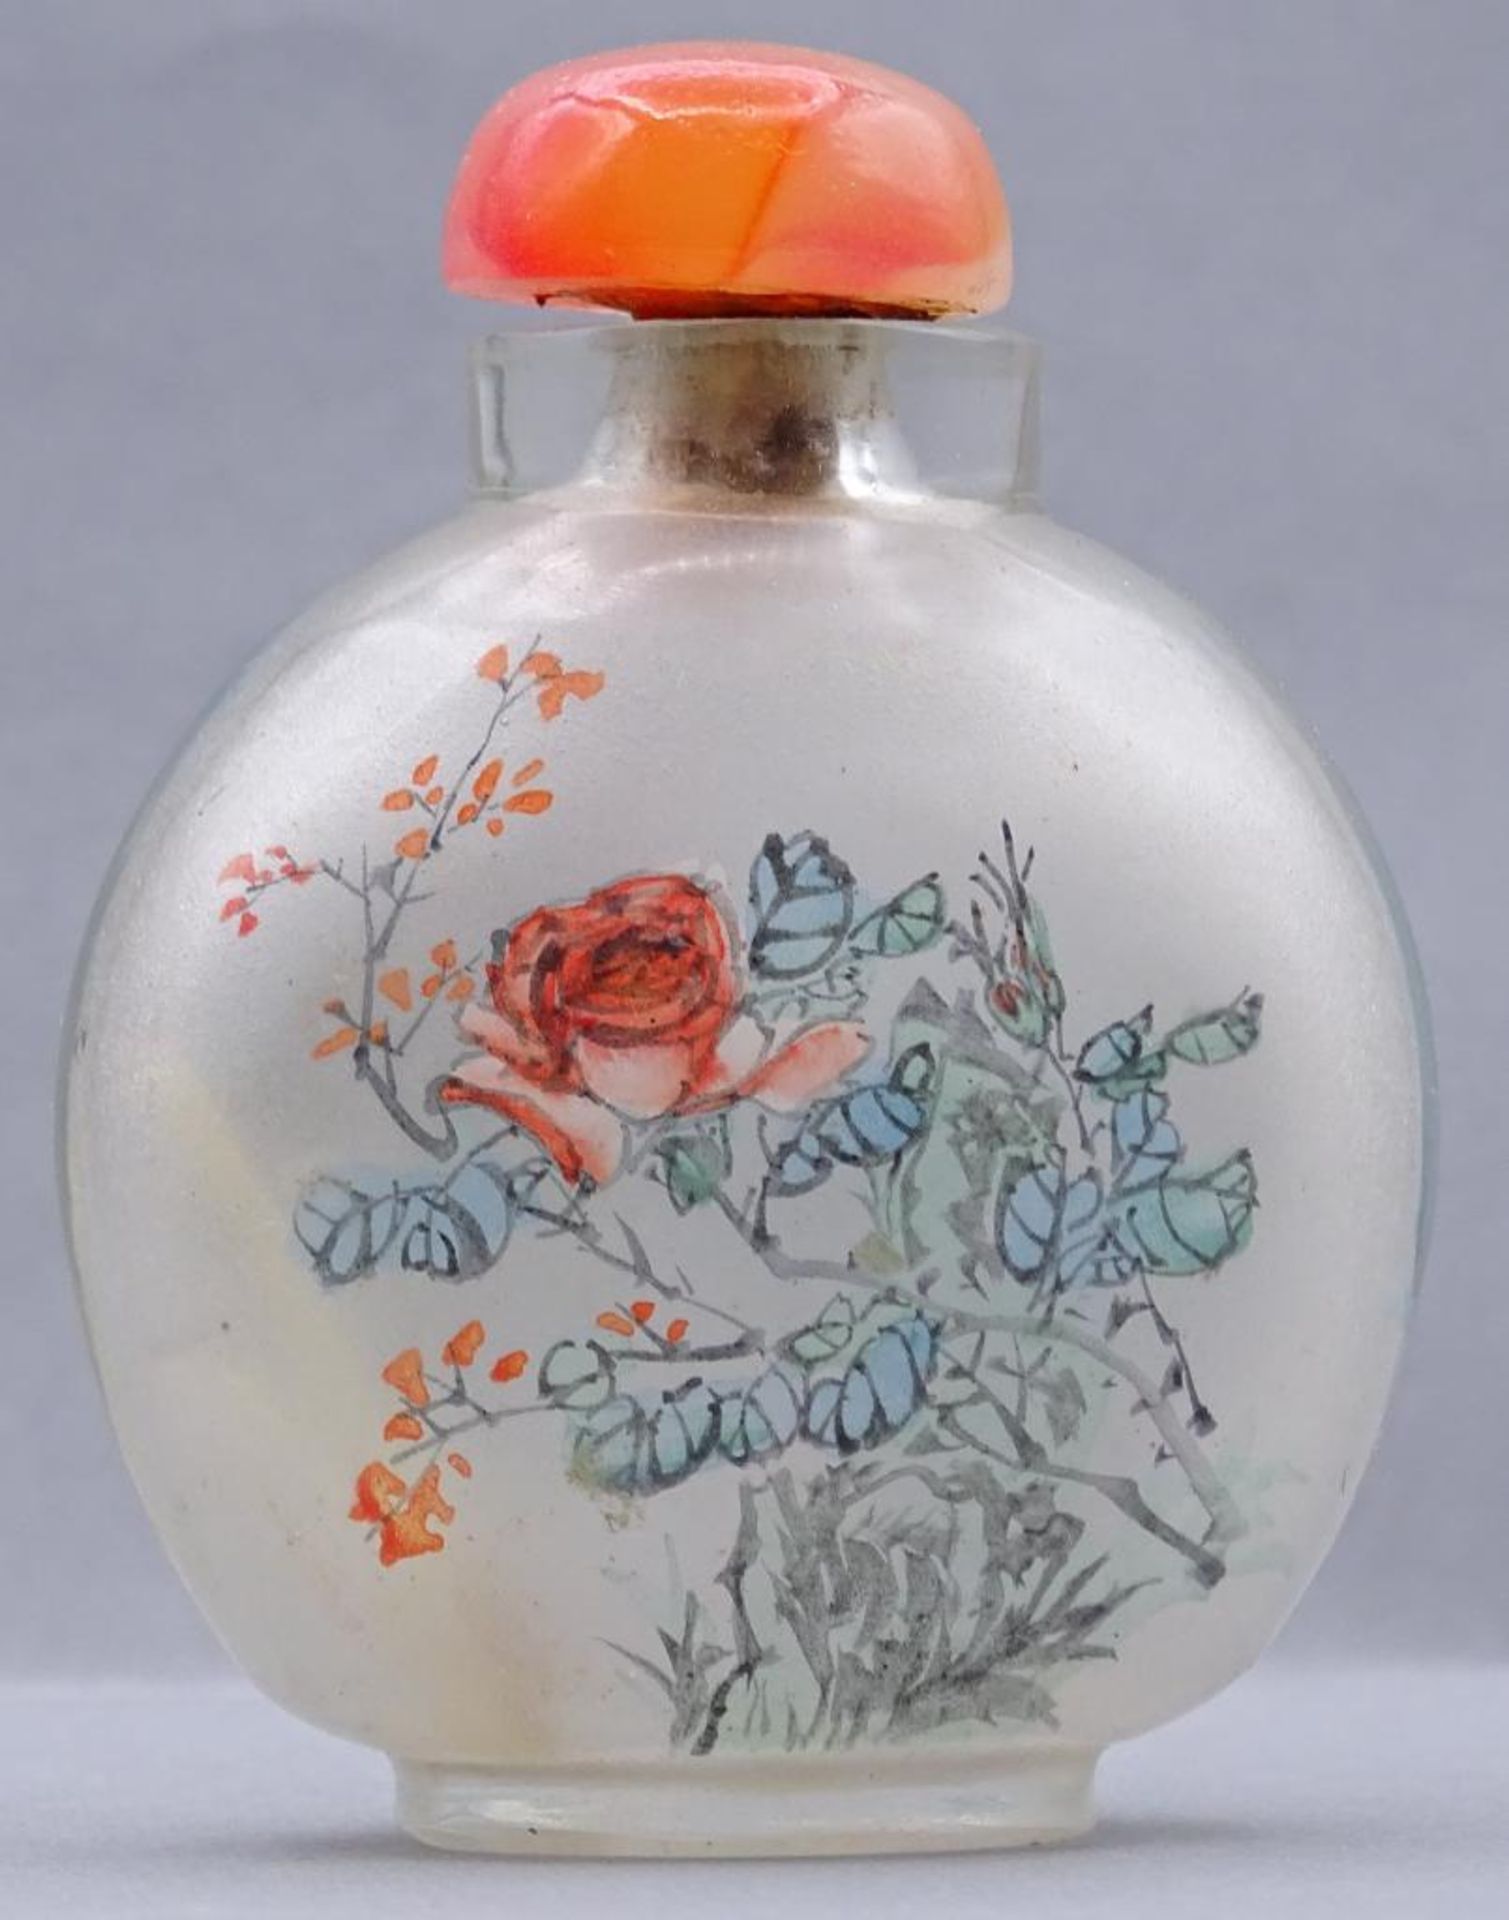 ovoide Snuff-Bottle, Zwischenglasmalerei, H-6,5 cm- - -22.61 % buyer's premium on the hammer - Bild 2 aus 3